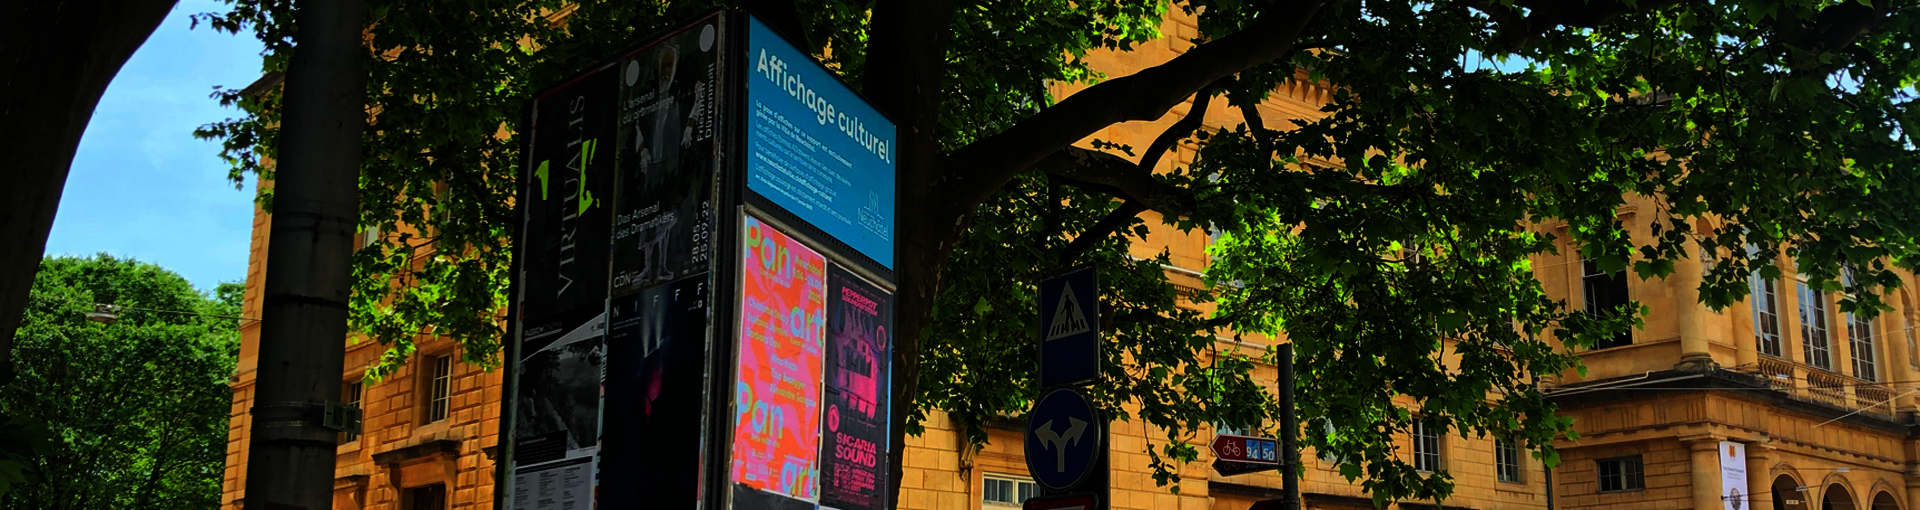 Une colonne avec des affiches près de la bibliothèque publique